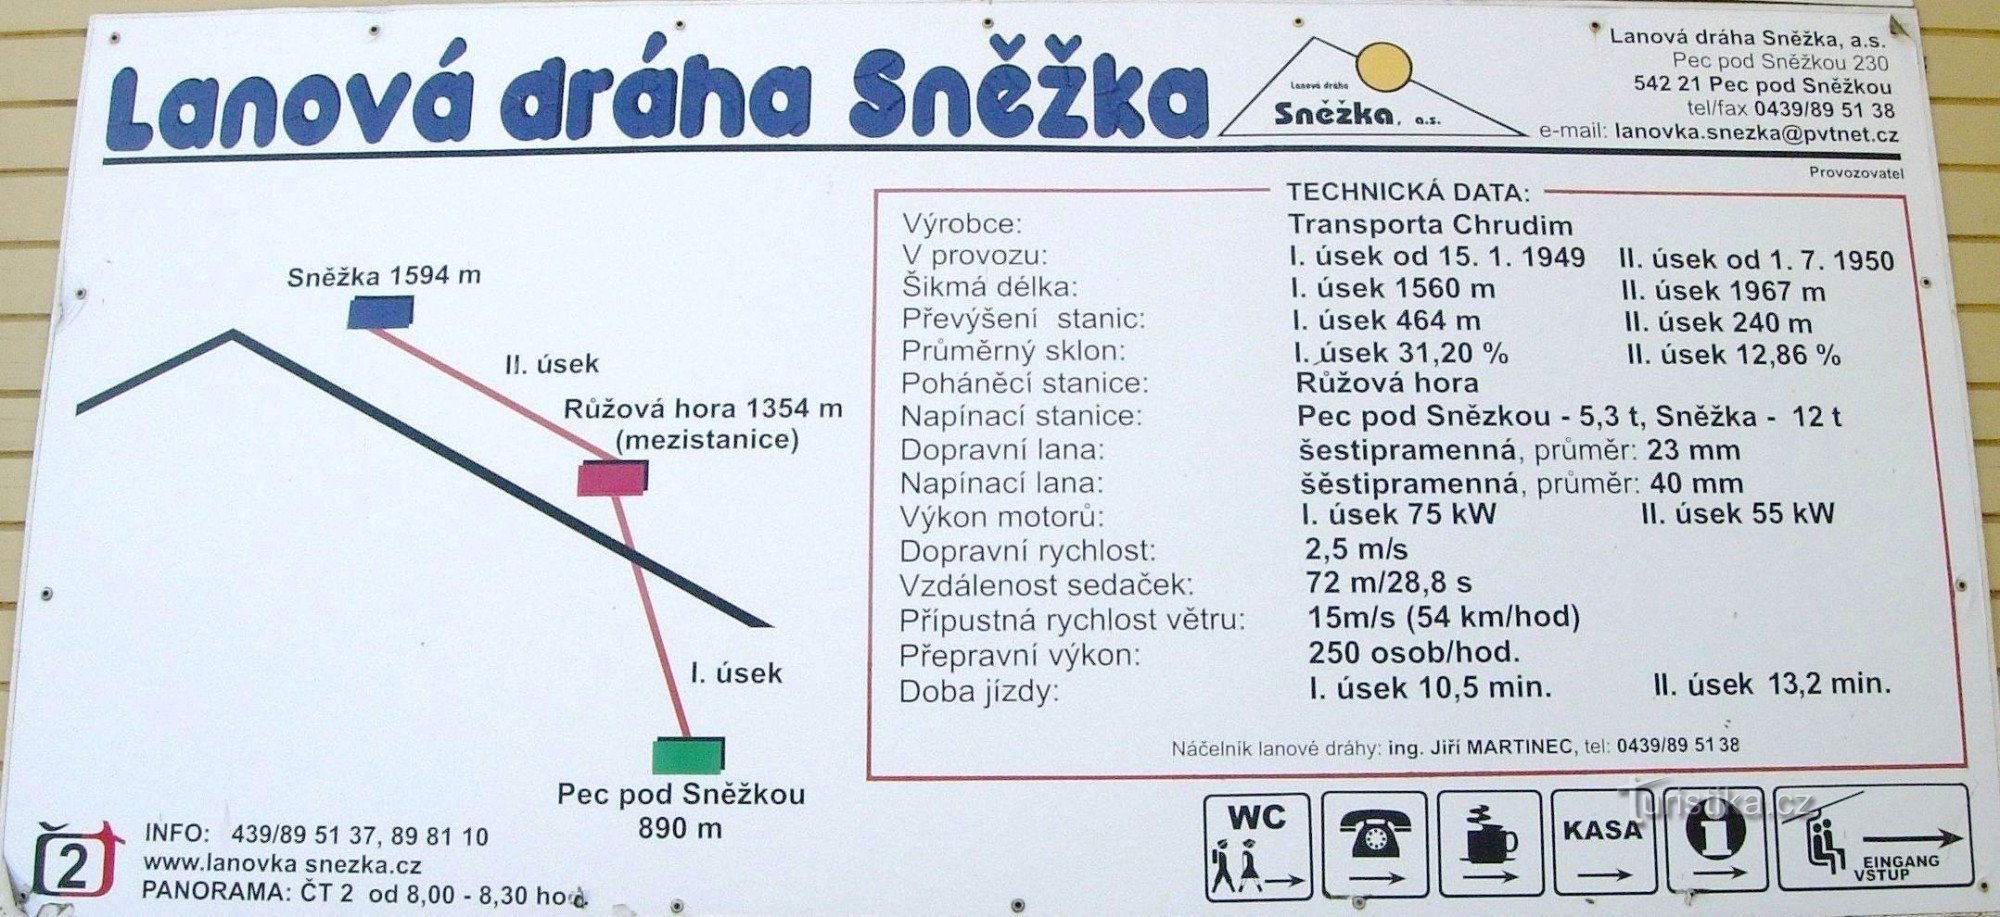 スニェシュカ ケーブル カーの技術データ